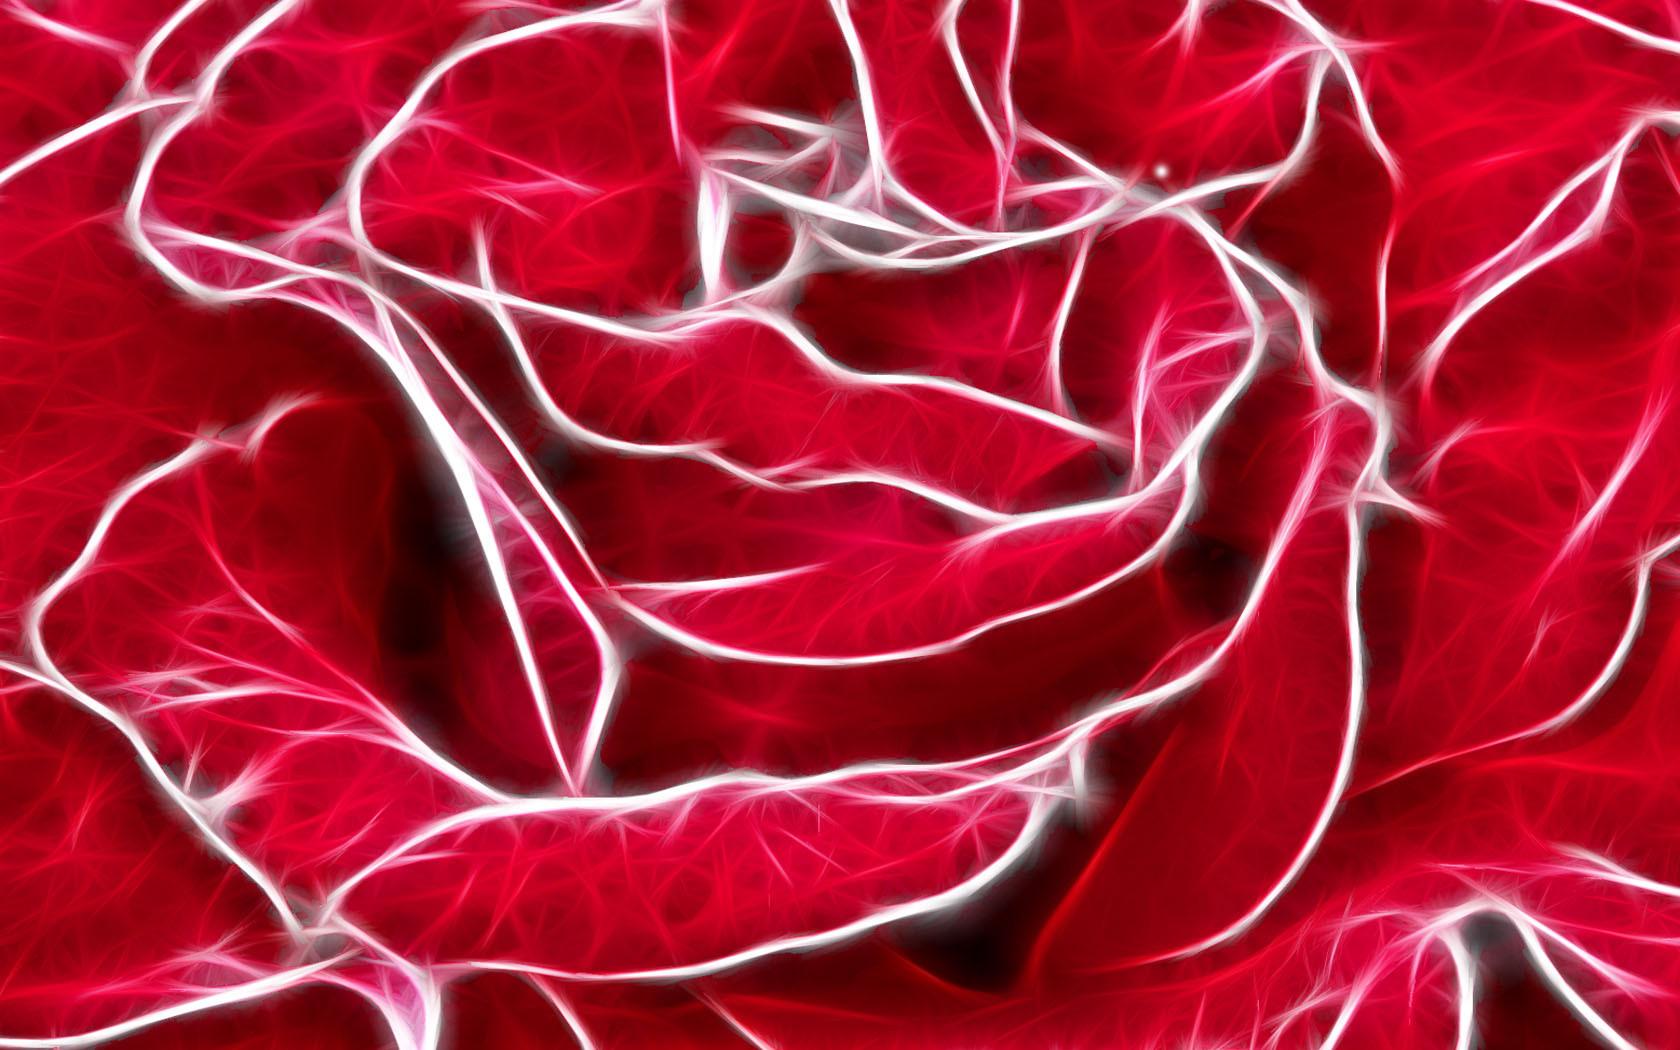 Ach Kakaja U Was Krasnaja Roża Krasnaja roza обои 1680x1050.